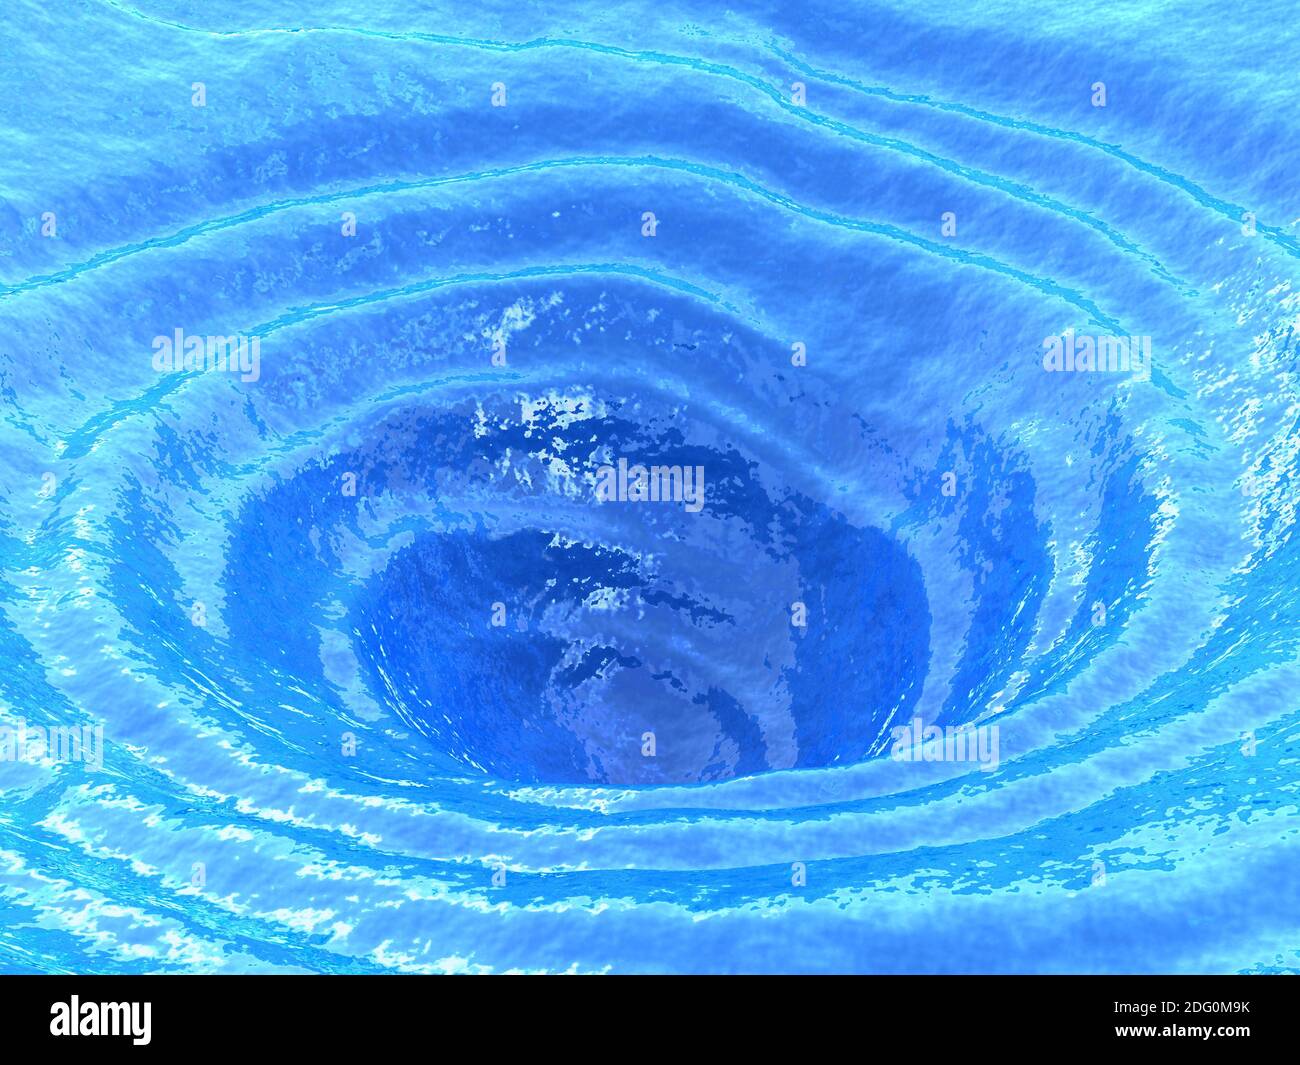 Ocean whirlpool, water vortex Stock Photo